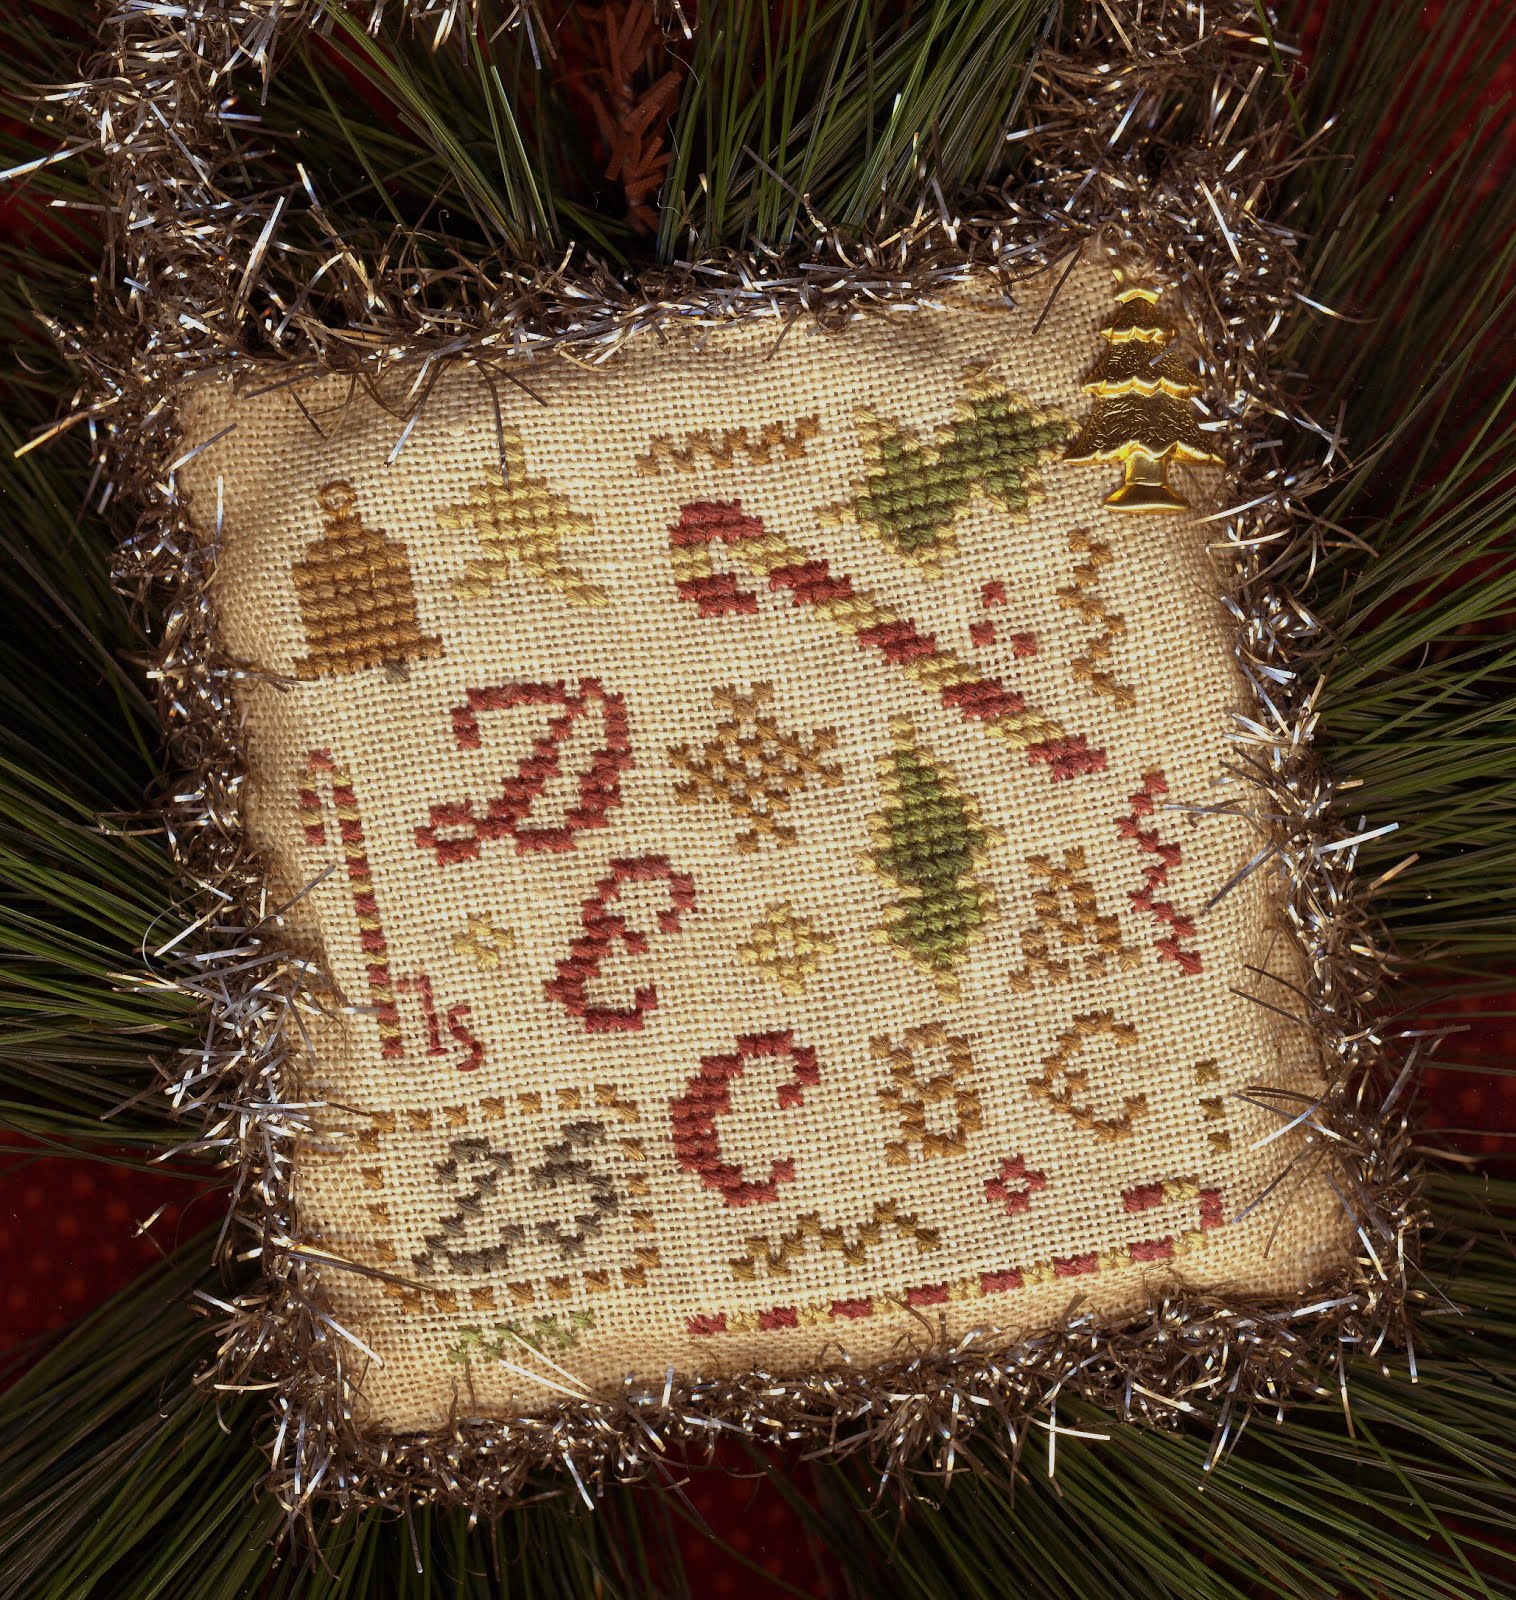 2015 Sampler Ornament ~ "Christmassy Stuff"